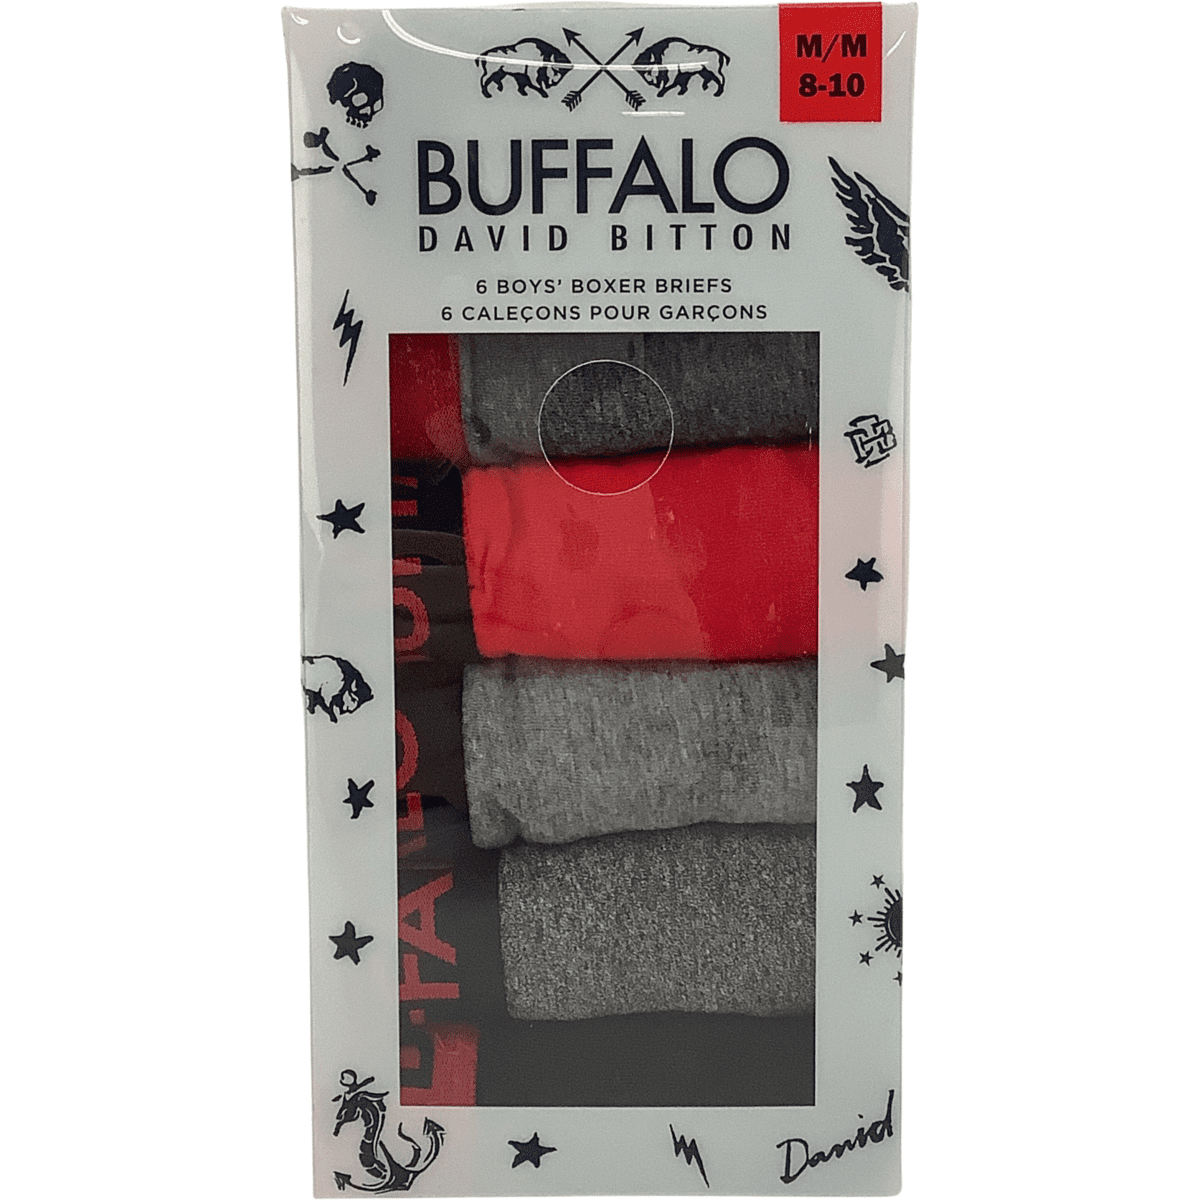  Buffalo Underwear